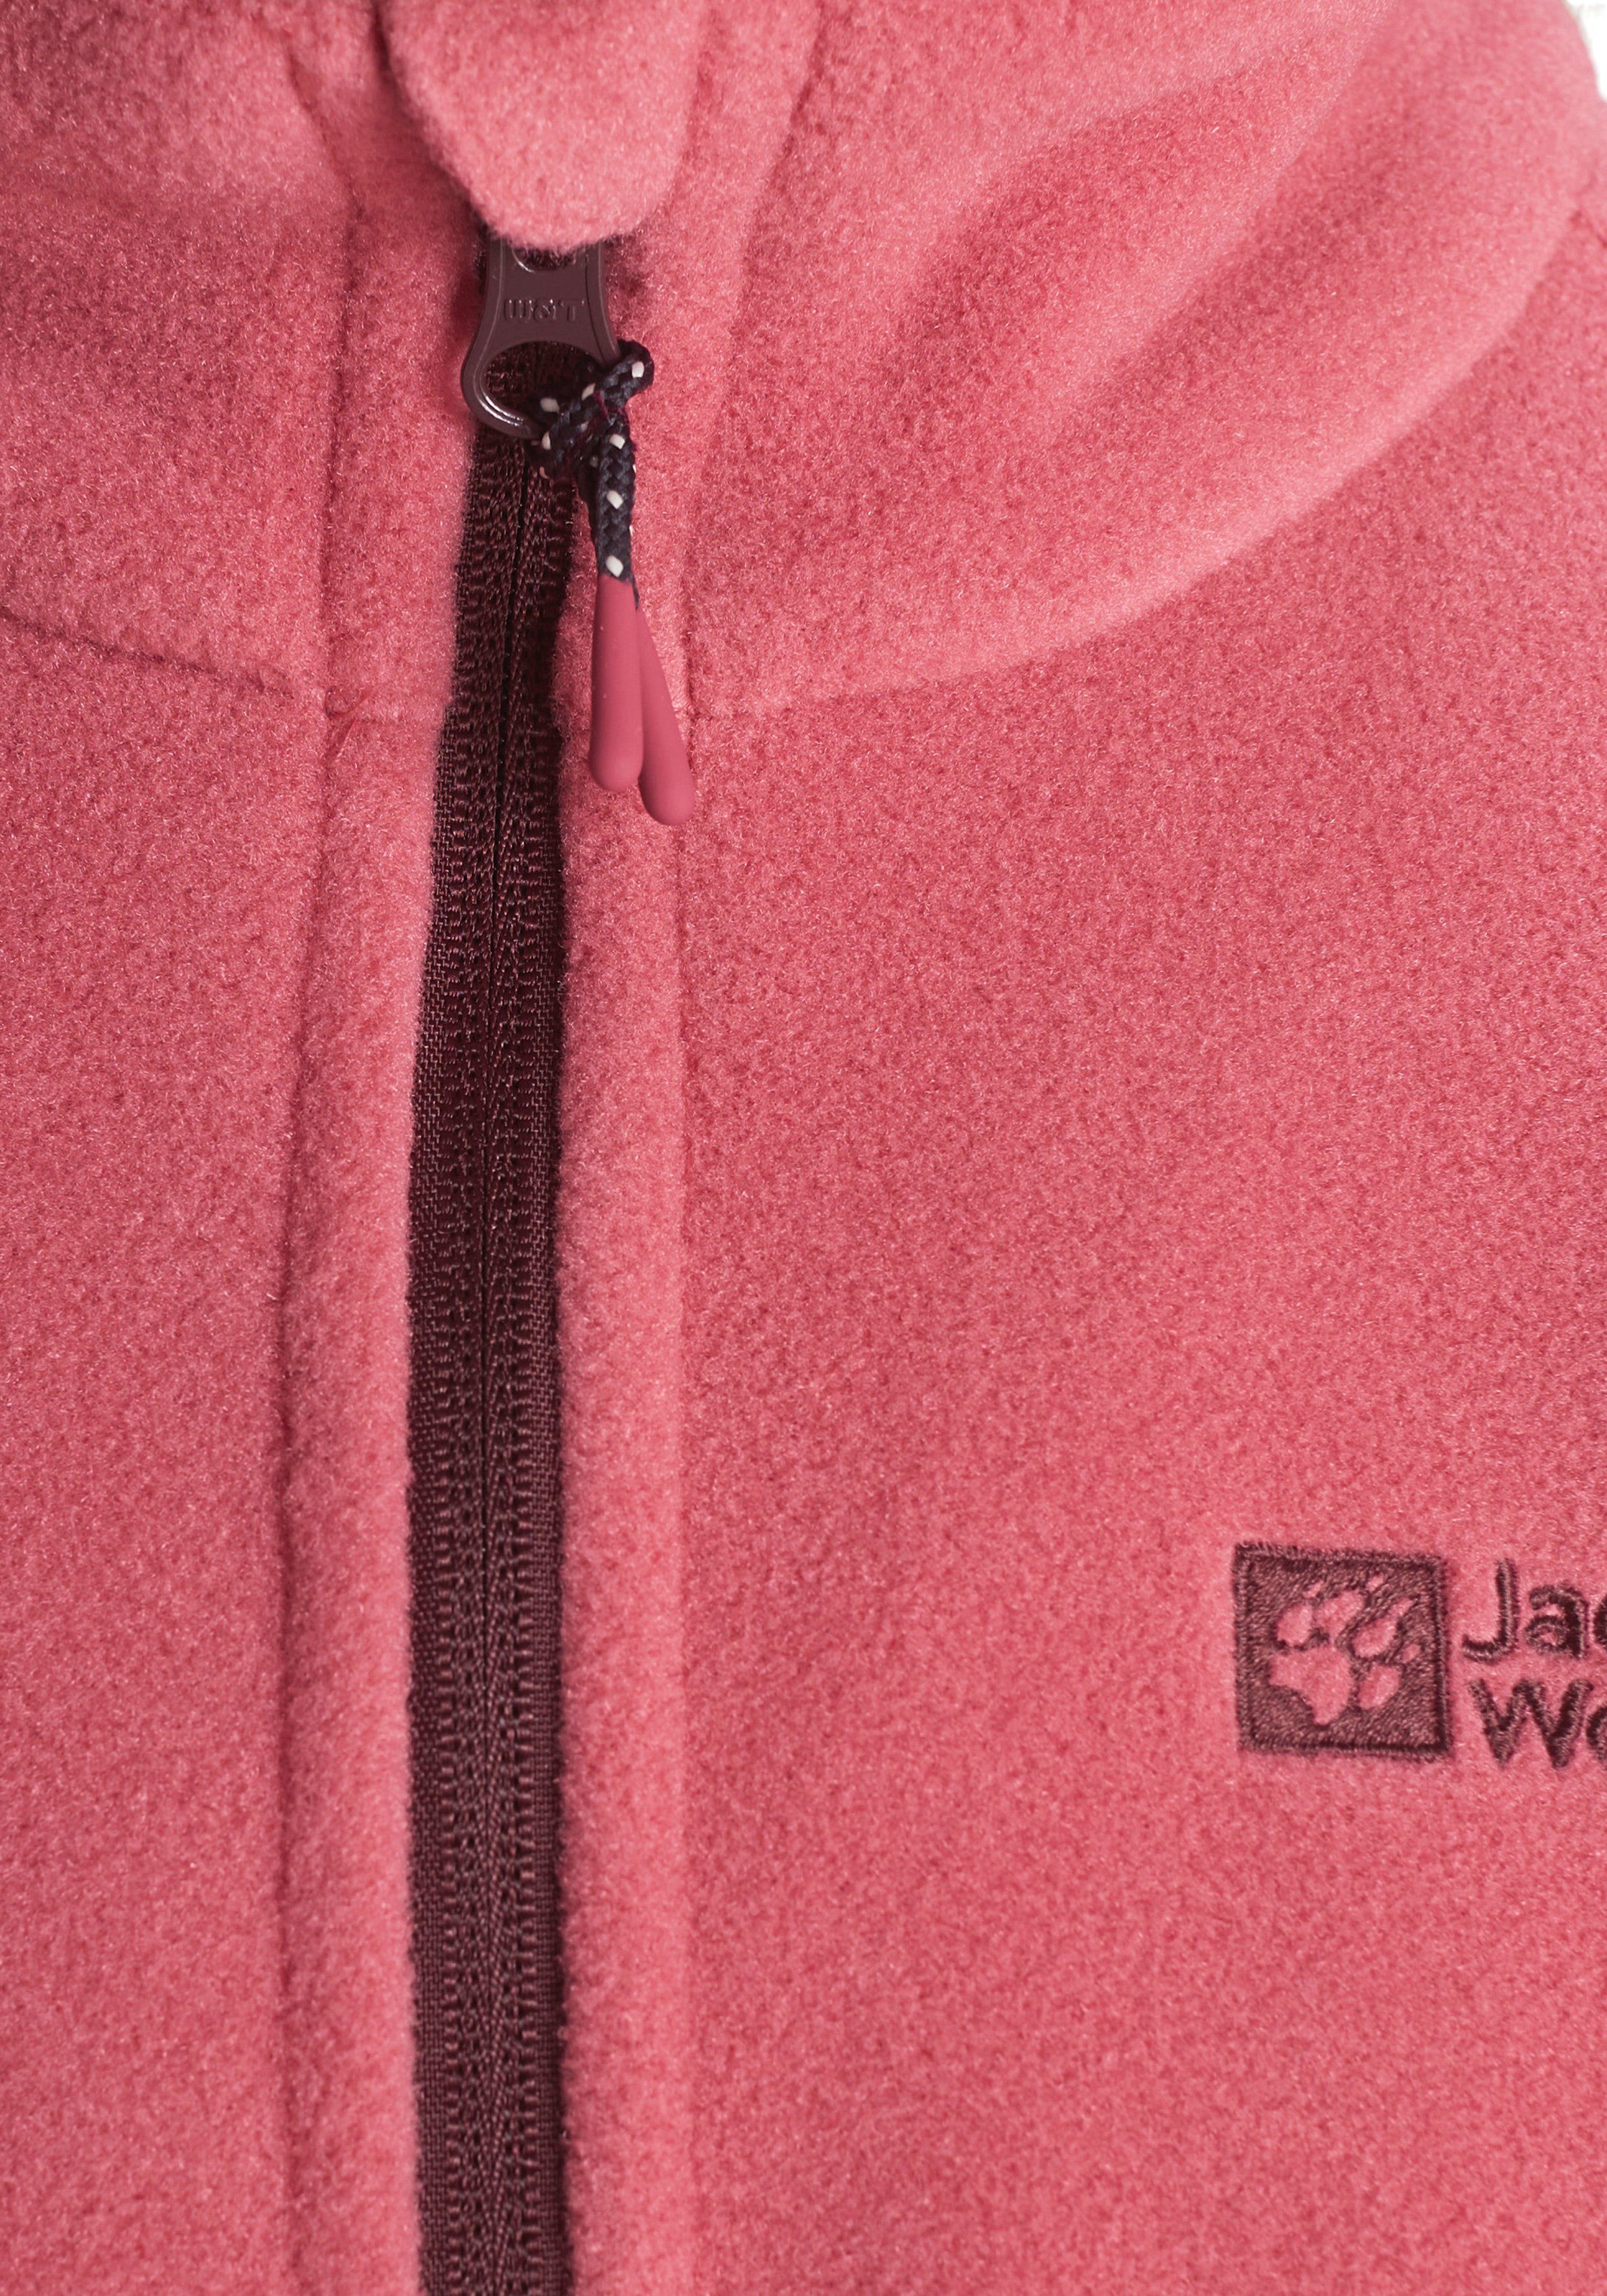 K aus WINTERSTEIN Wolfskin Jack JACKET Fleecejacke Recyclingmaterial soft pink